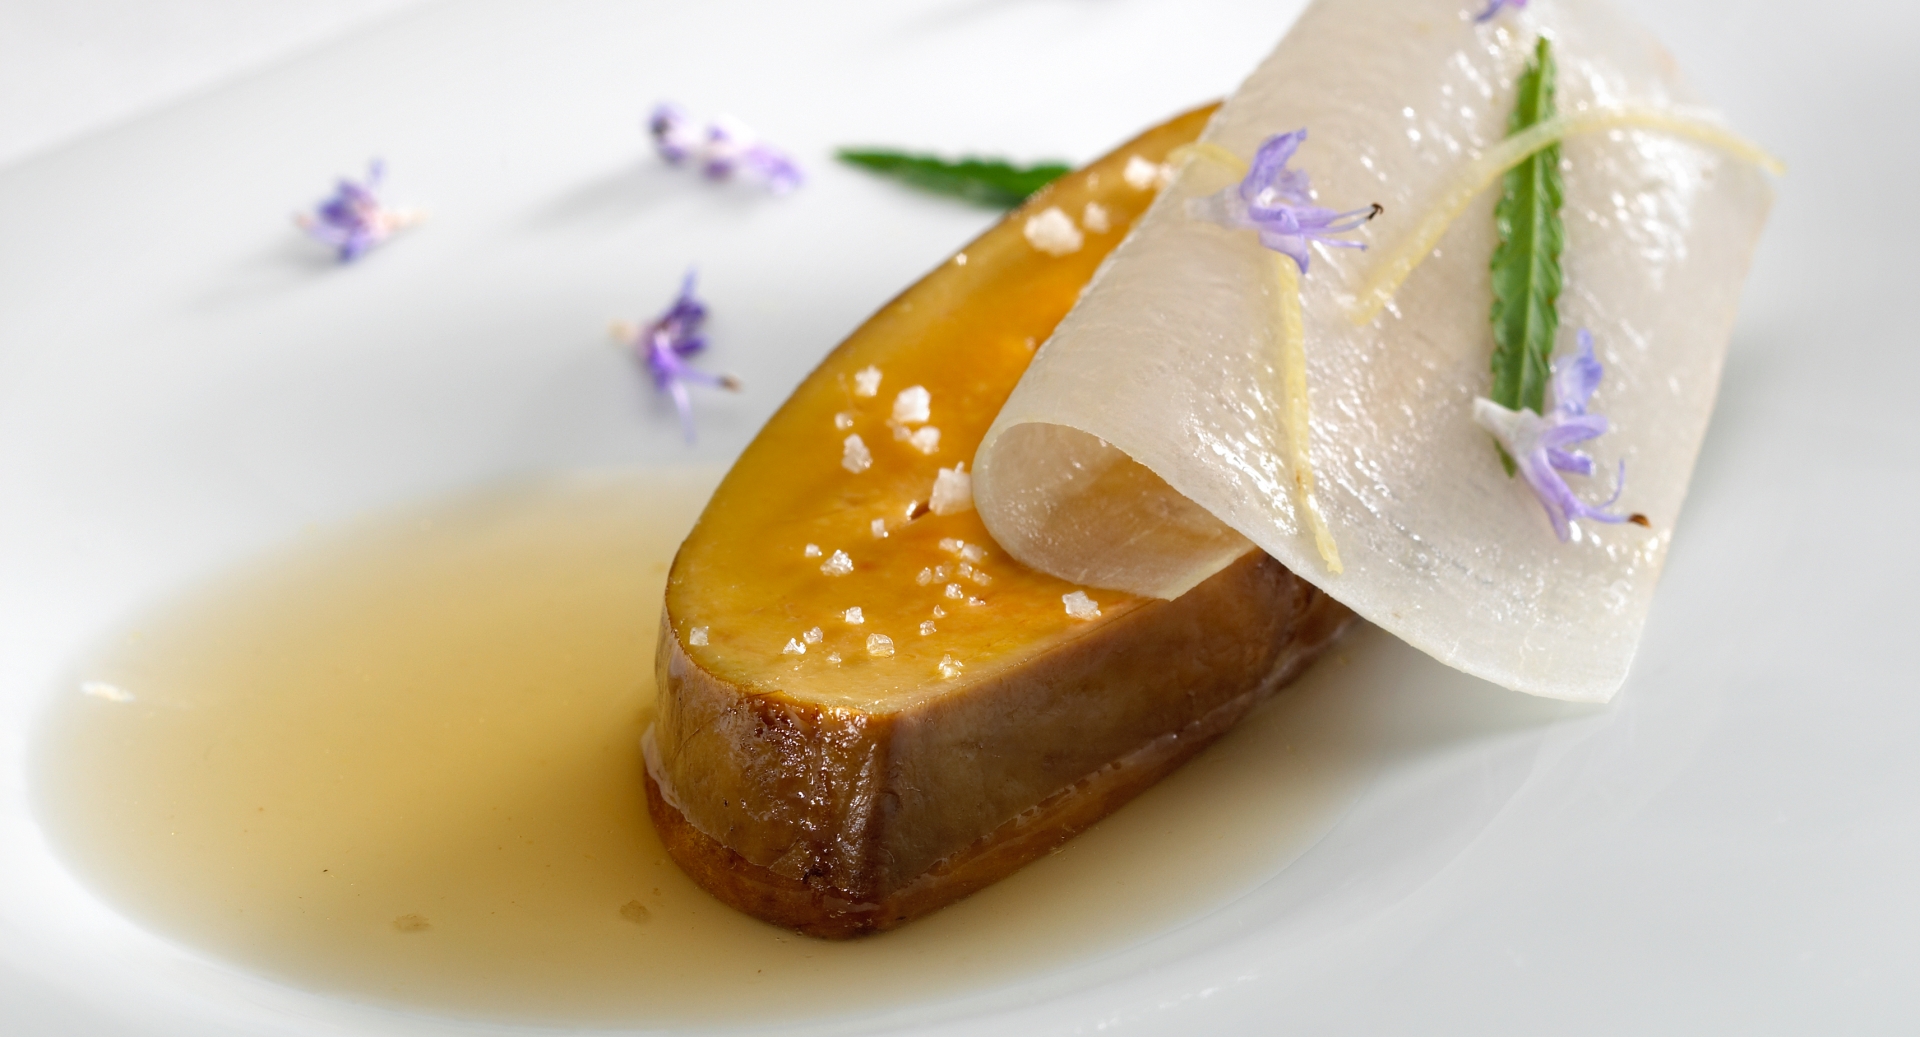 Escalope de foie gras asado y reposado en la parrilla de carbón. Yuca confitada en un consomé de huesos de dátil. Tageta enana [Tagetes signata pumila].
FOTO: José Luis López de Zubiría / Mugaritz